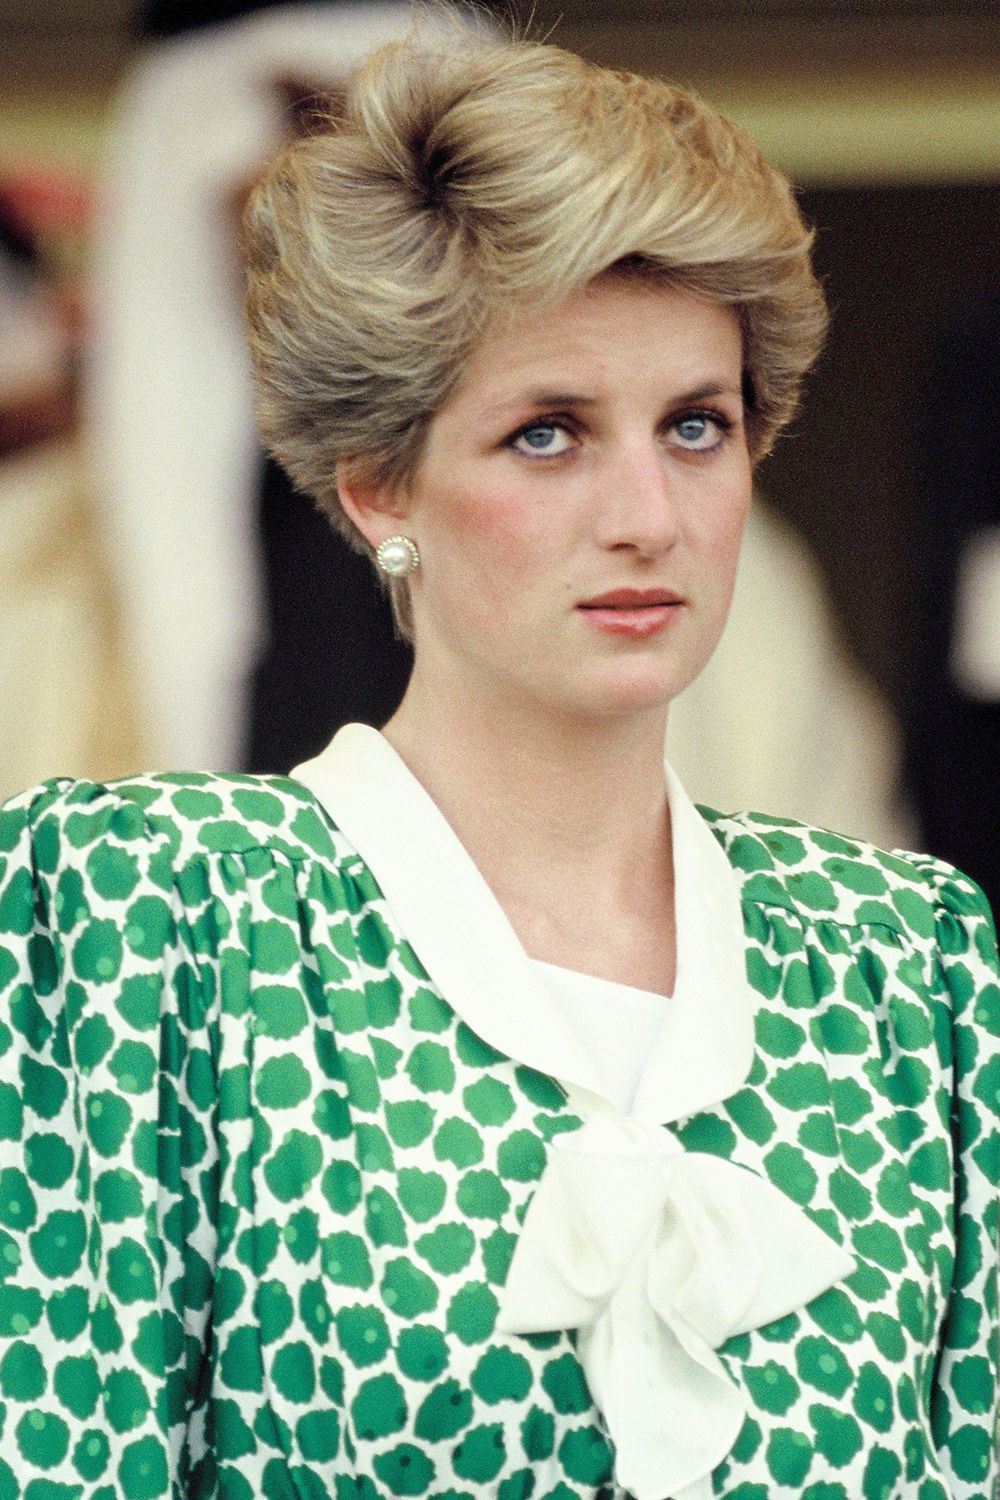 Bí mật đằng sau mái tóc ngắn hoàn hảo của của Công nương Diana sẽ khiến bạn càng ngưỡng mộ sự kín đáo của bà - Ảnh 4.